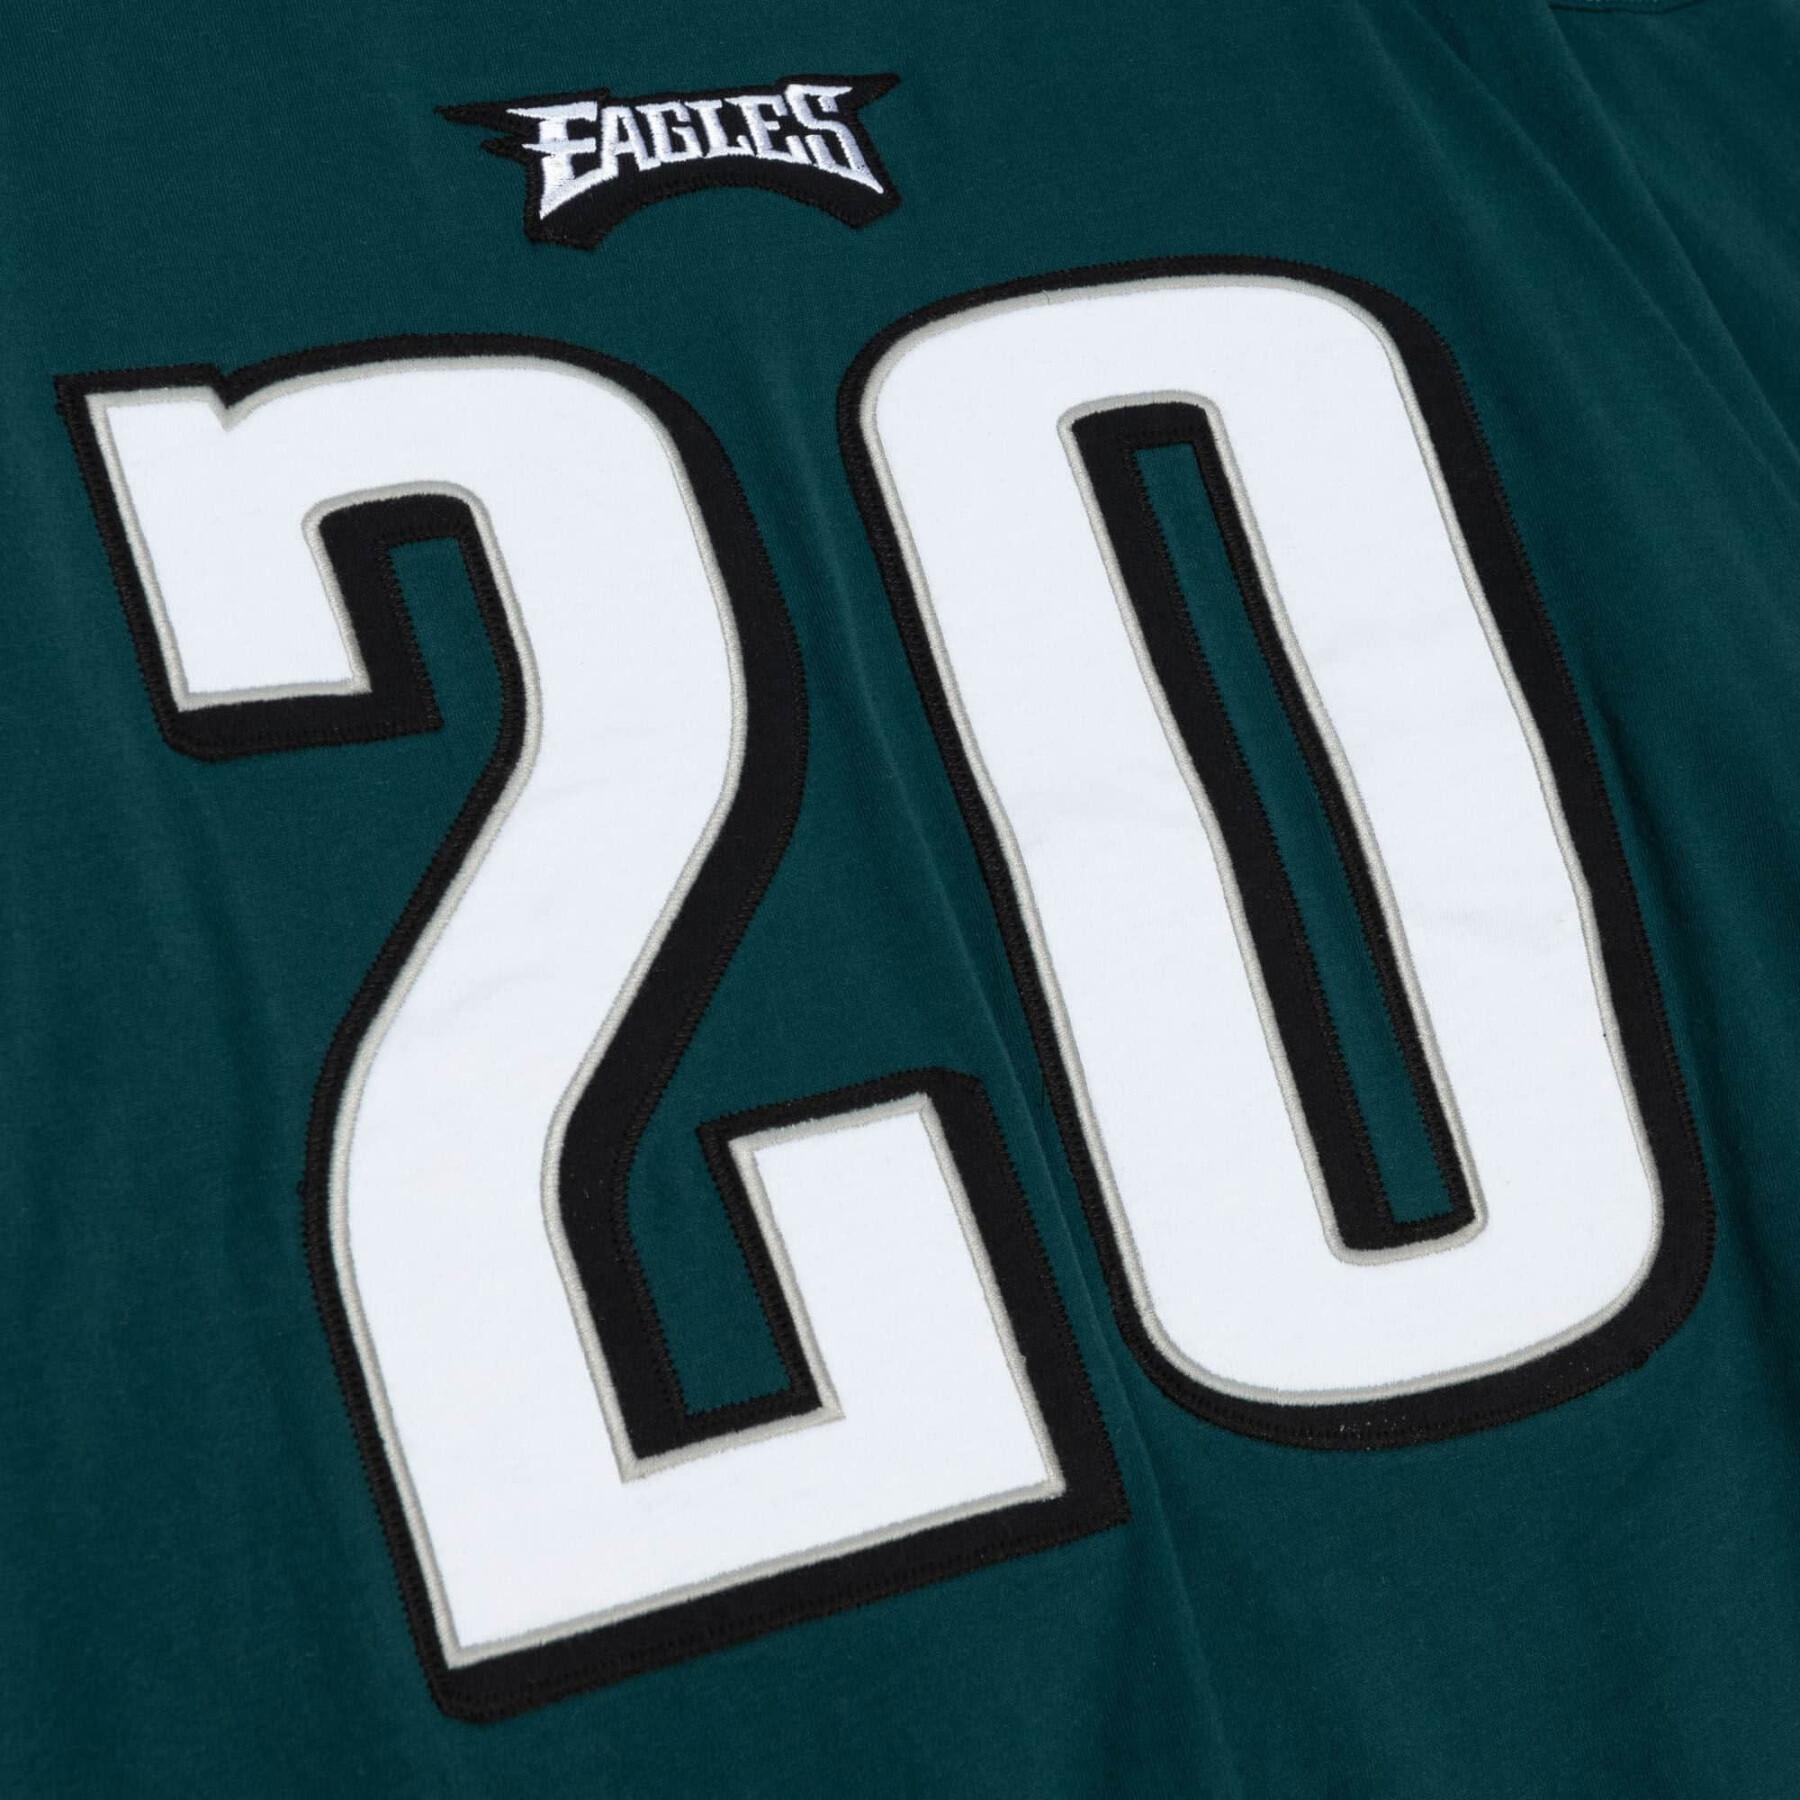 T-shirt manches longues Eagles NFL N&N 2003 Brian Dawkins